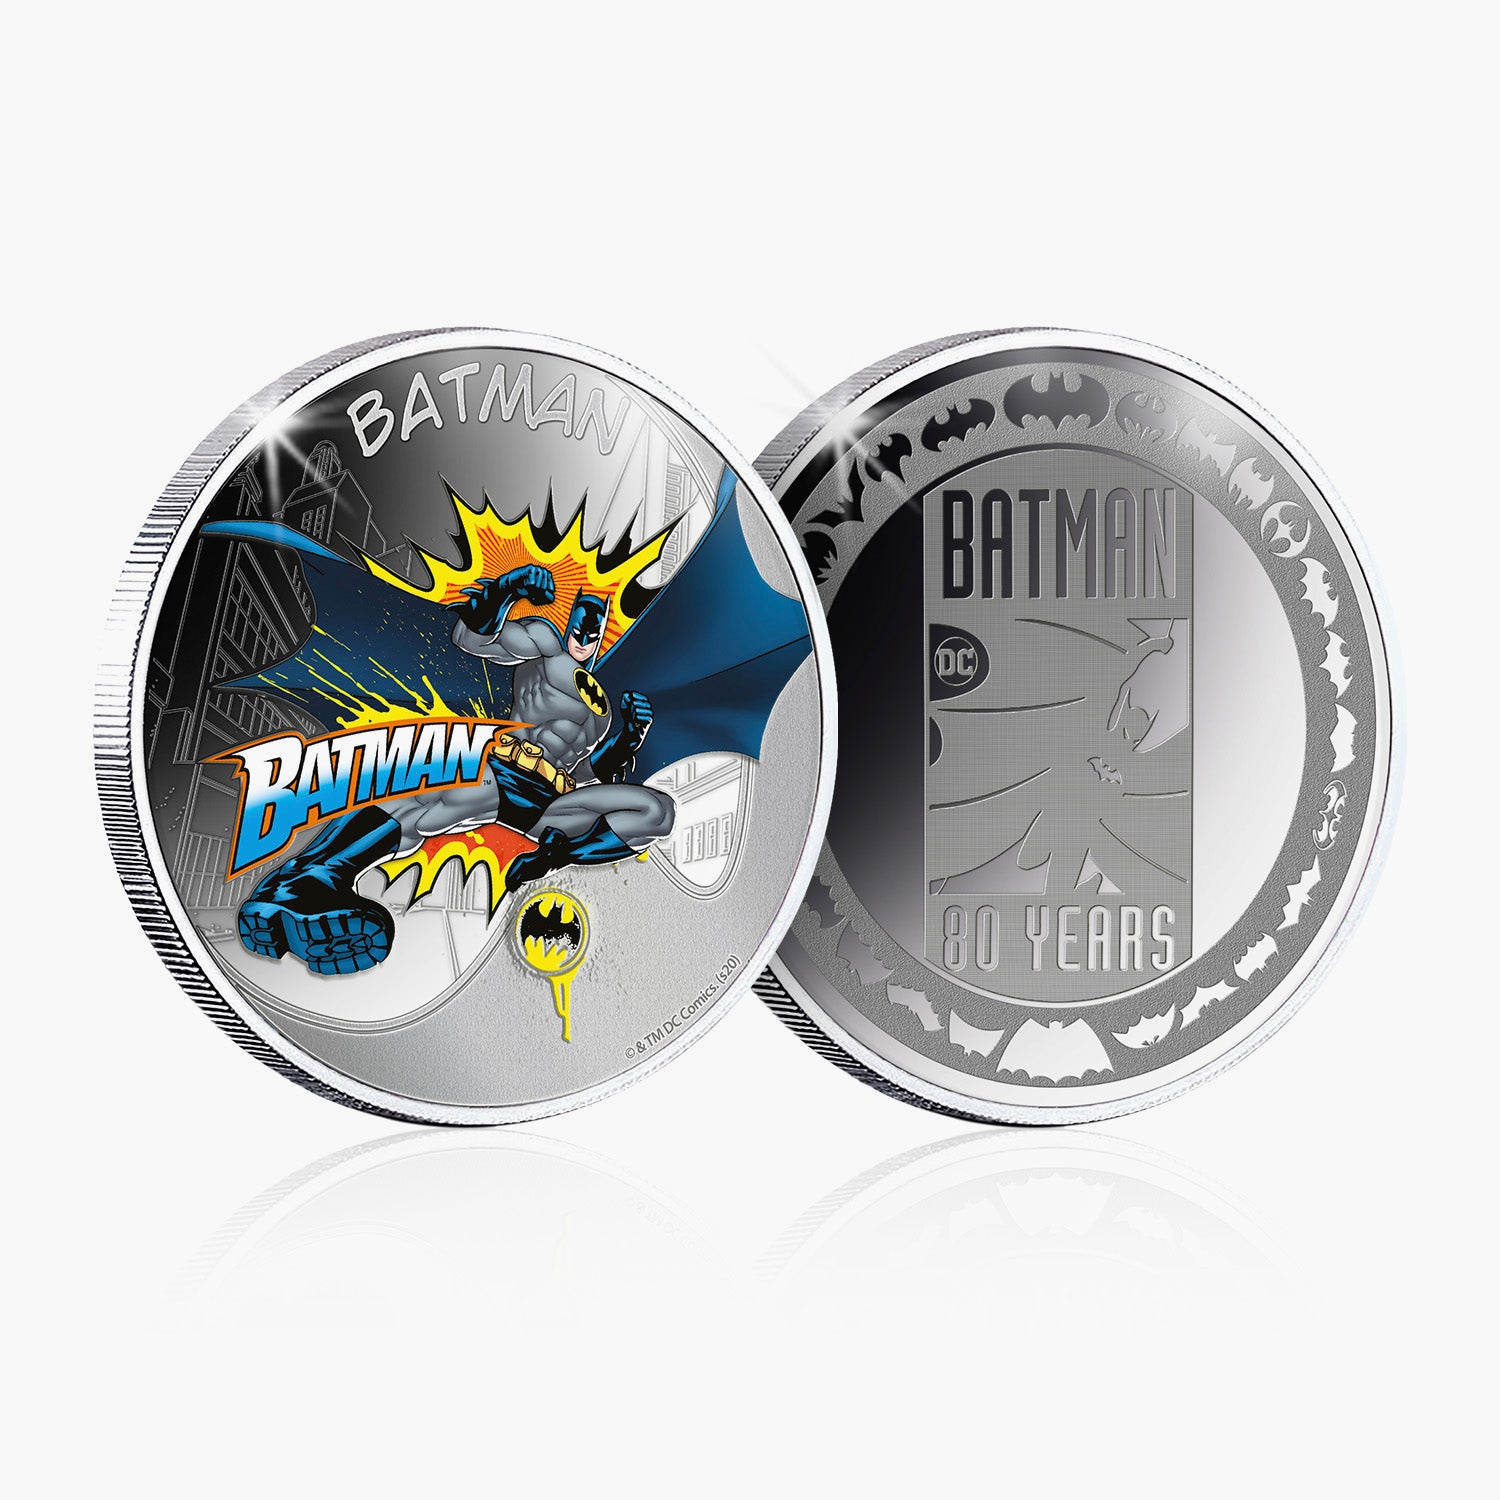 Batman and Robin Silver Plated Commemorative